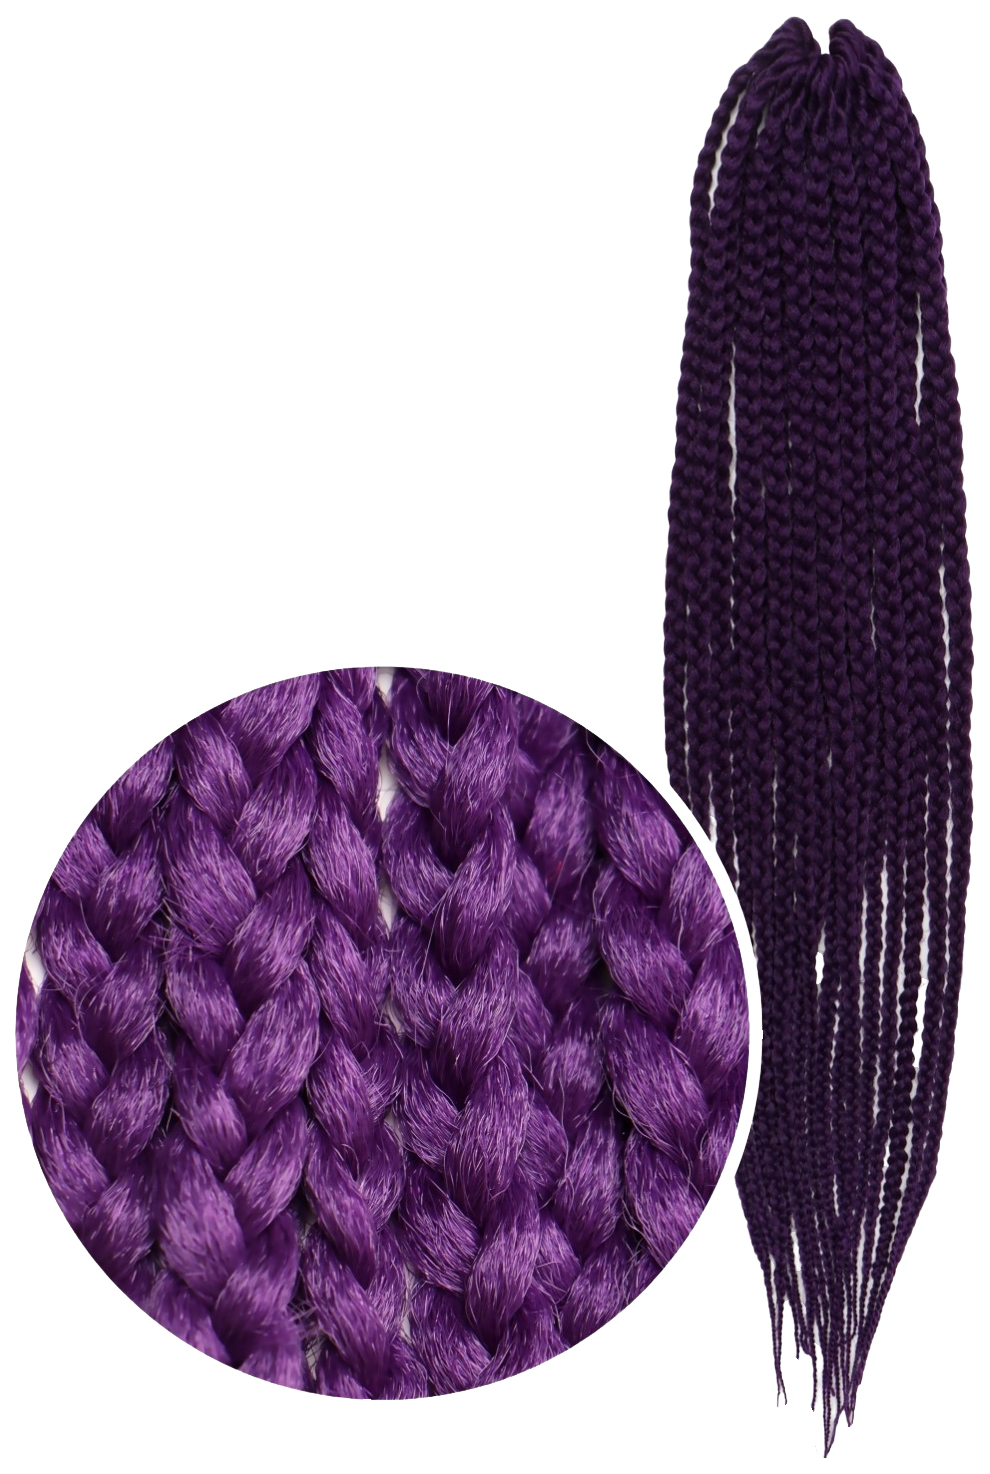 Афрокосы Queen Fair Sim-Braids CE 18 прядей 60 см цвет фиолетовый IlI Pur sim braids афрокосы 60 см 18 прядей ce ультрамарин bd